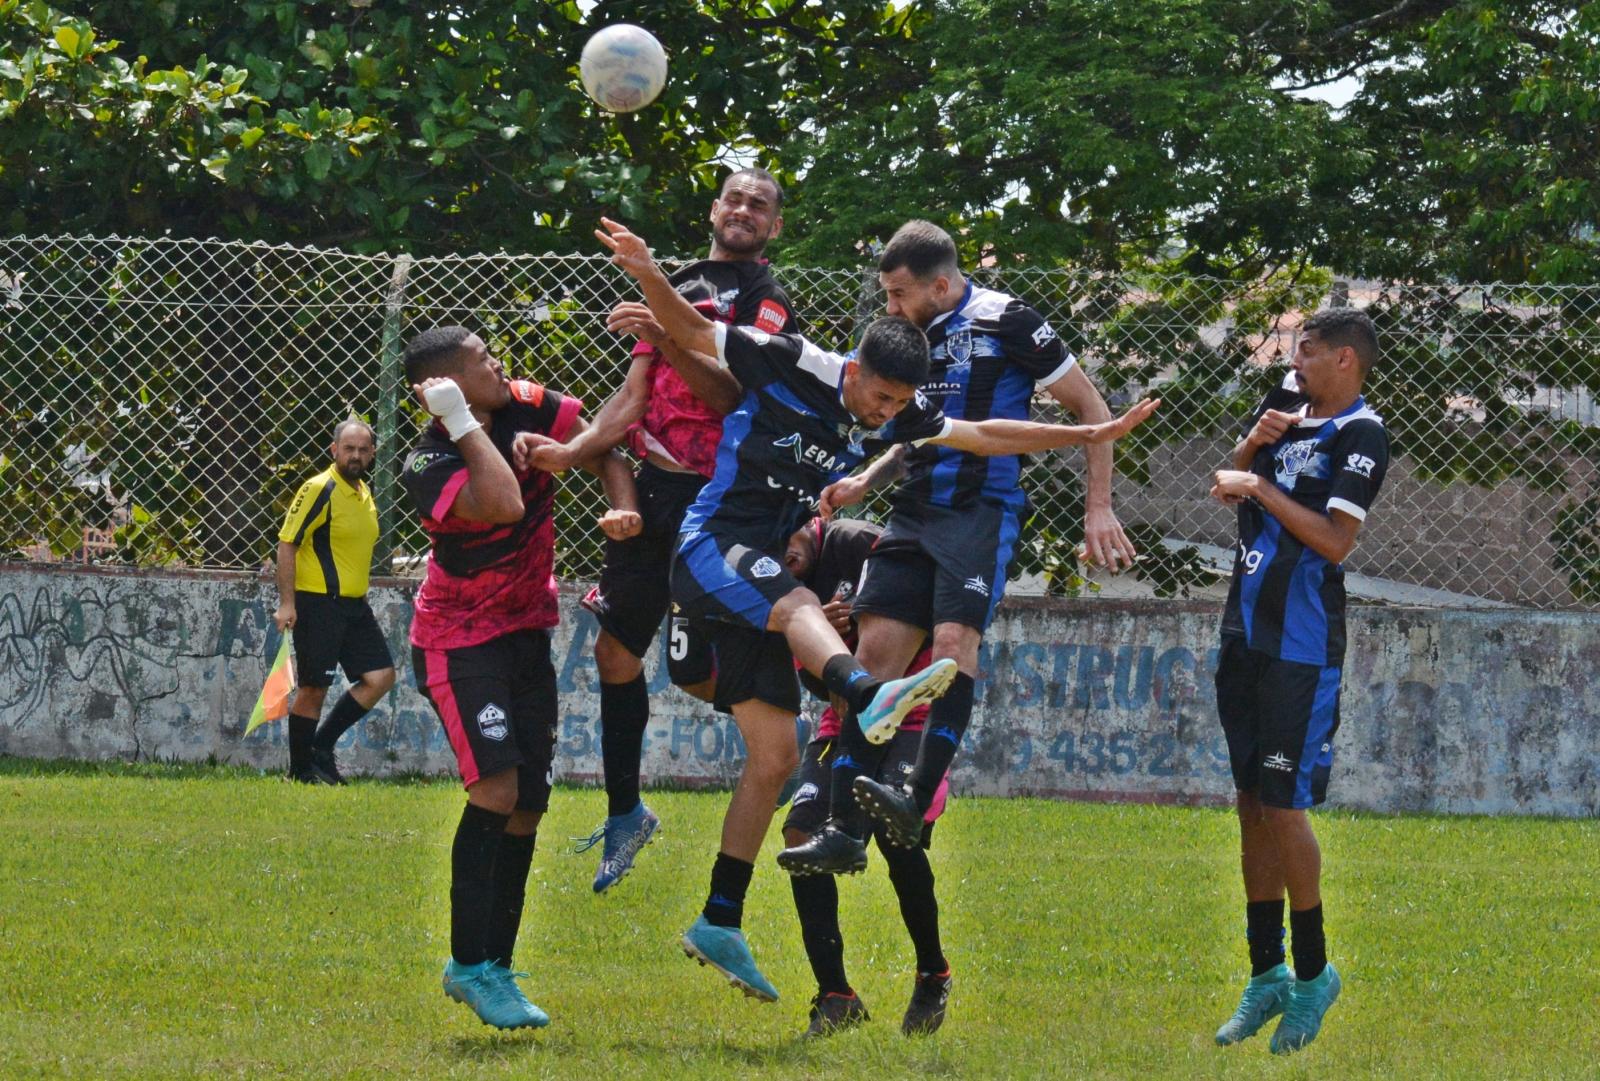 Oitavas-de-final agitam a Copa Itatiba de Futebol Amador neste domingo